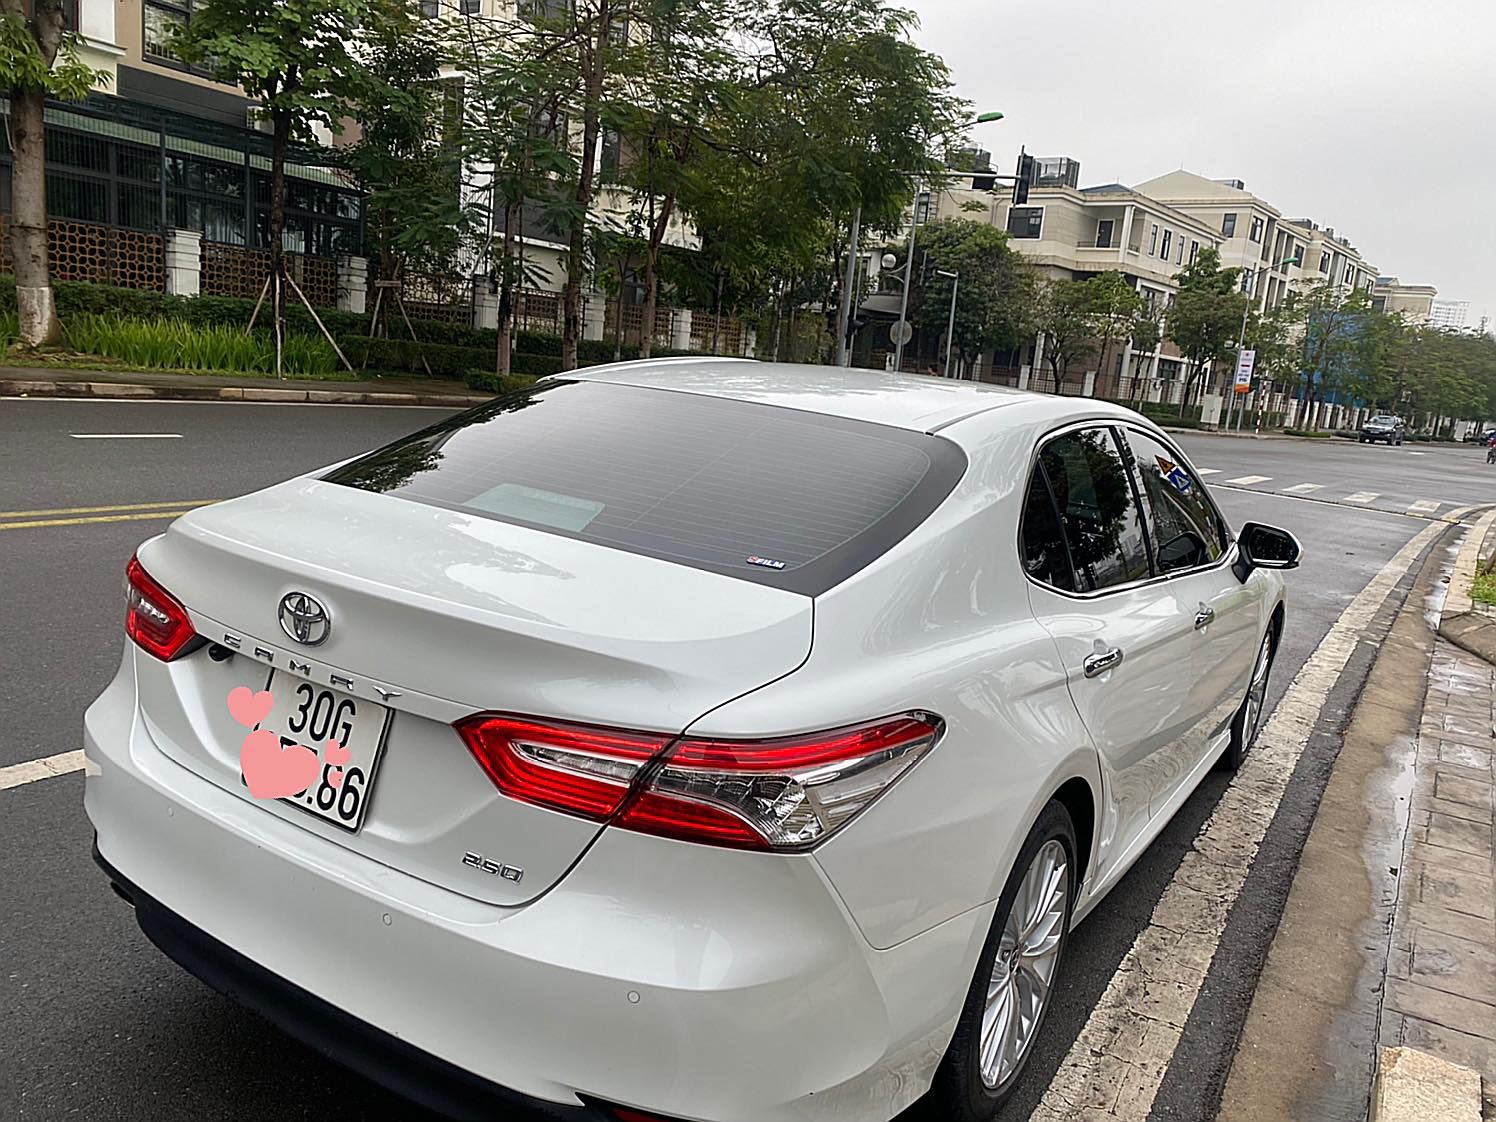 Toyota Van 2020 - Toyota Van 2020 tại Hà Nội